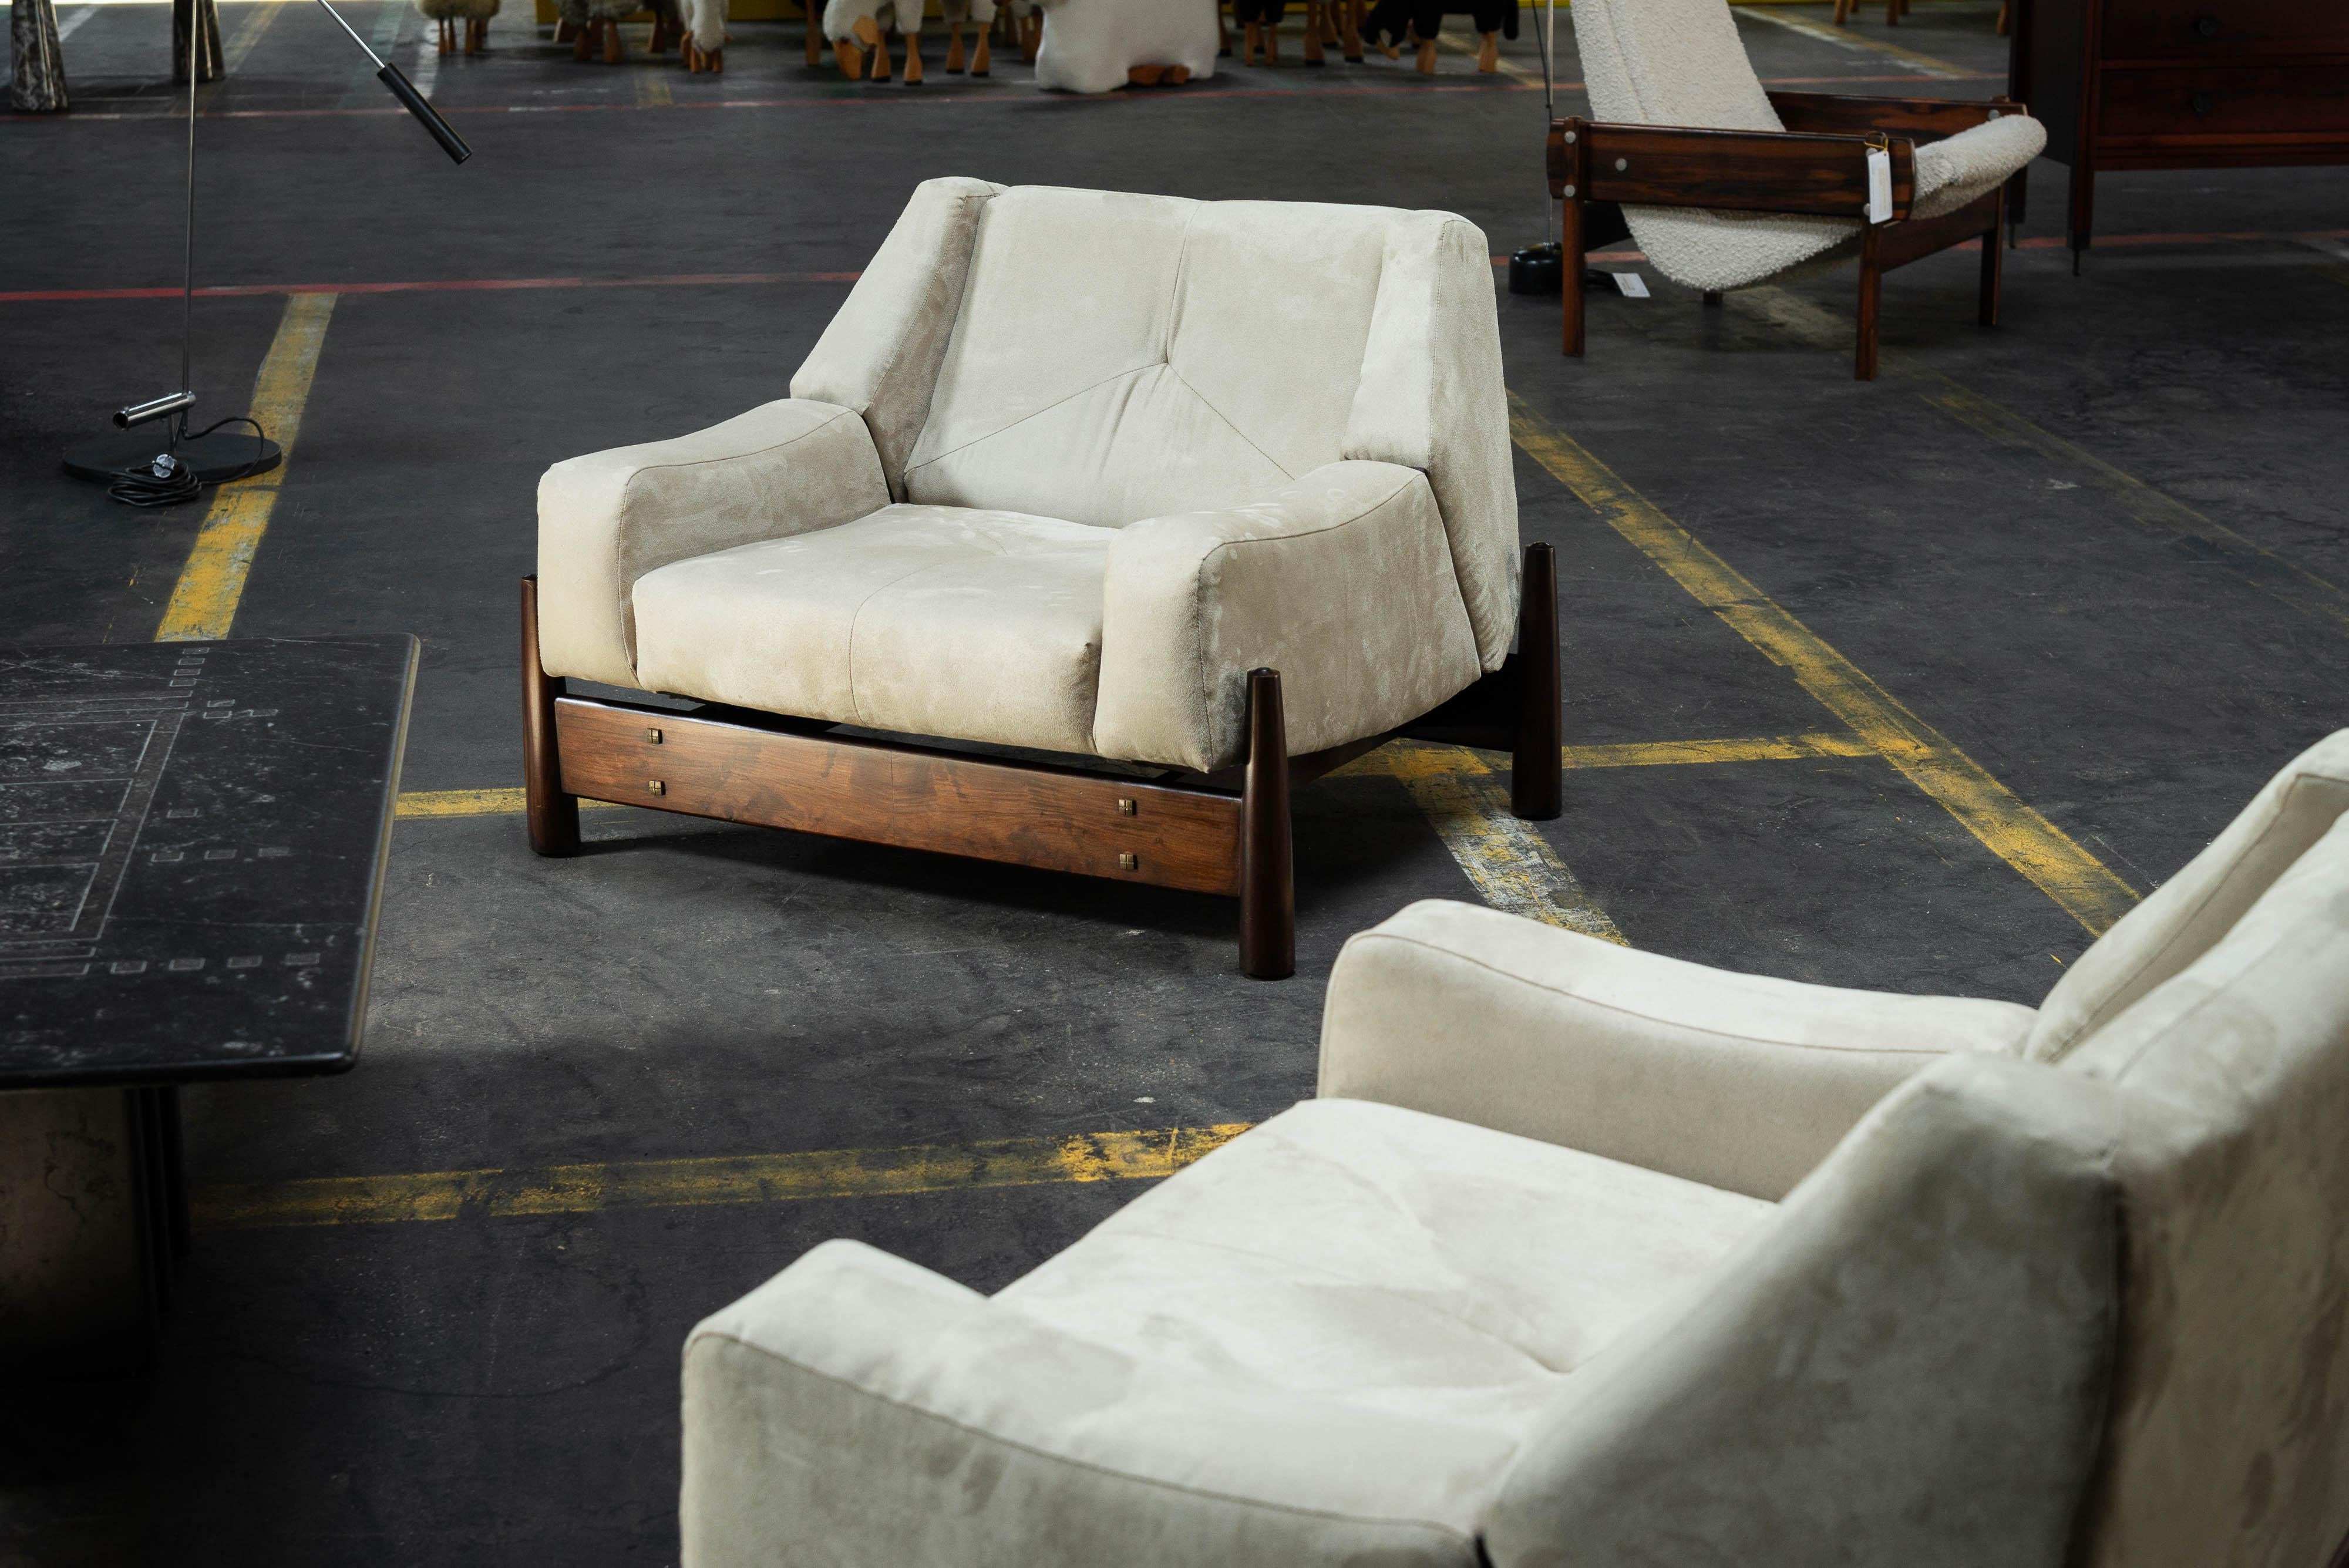 Schöne skulpturale B082 Lounge Chairs, hergestellt von Moveis Cimo in Brasilien im Jahr 1960. Diese Stühle sind sperrig und doch verspielt, mit einem starken Holzrahmen aus Jatoba-Holz. Der Rahmen hat die Form eines Quadrats, und an jeder Ecke